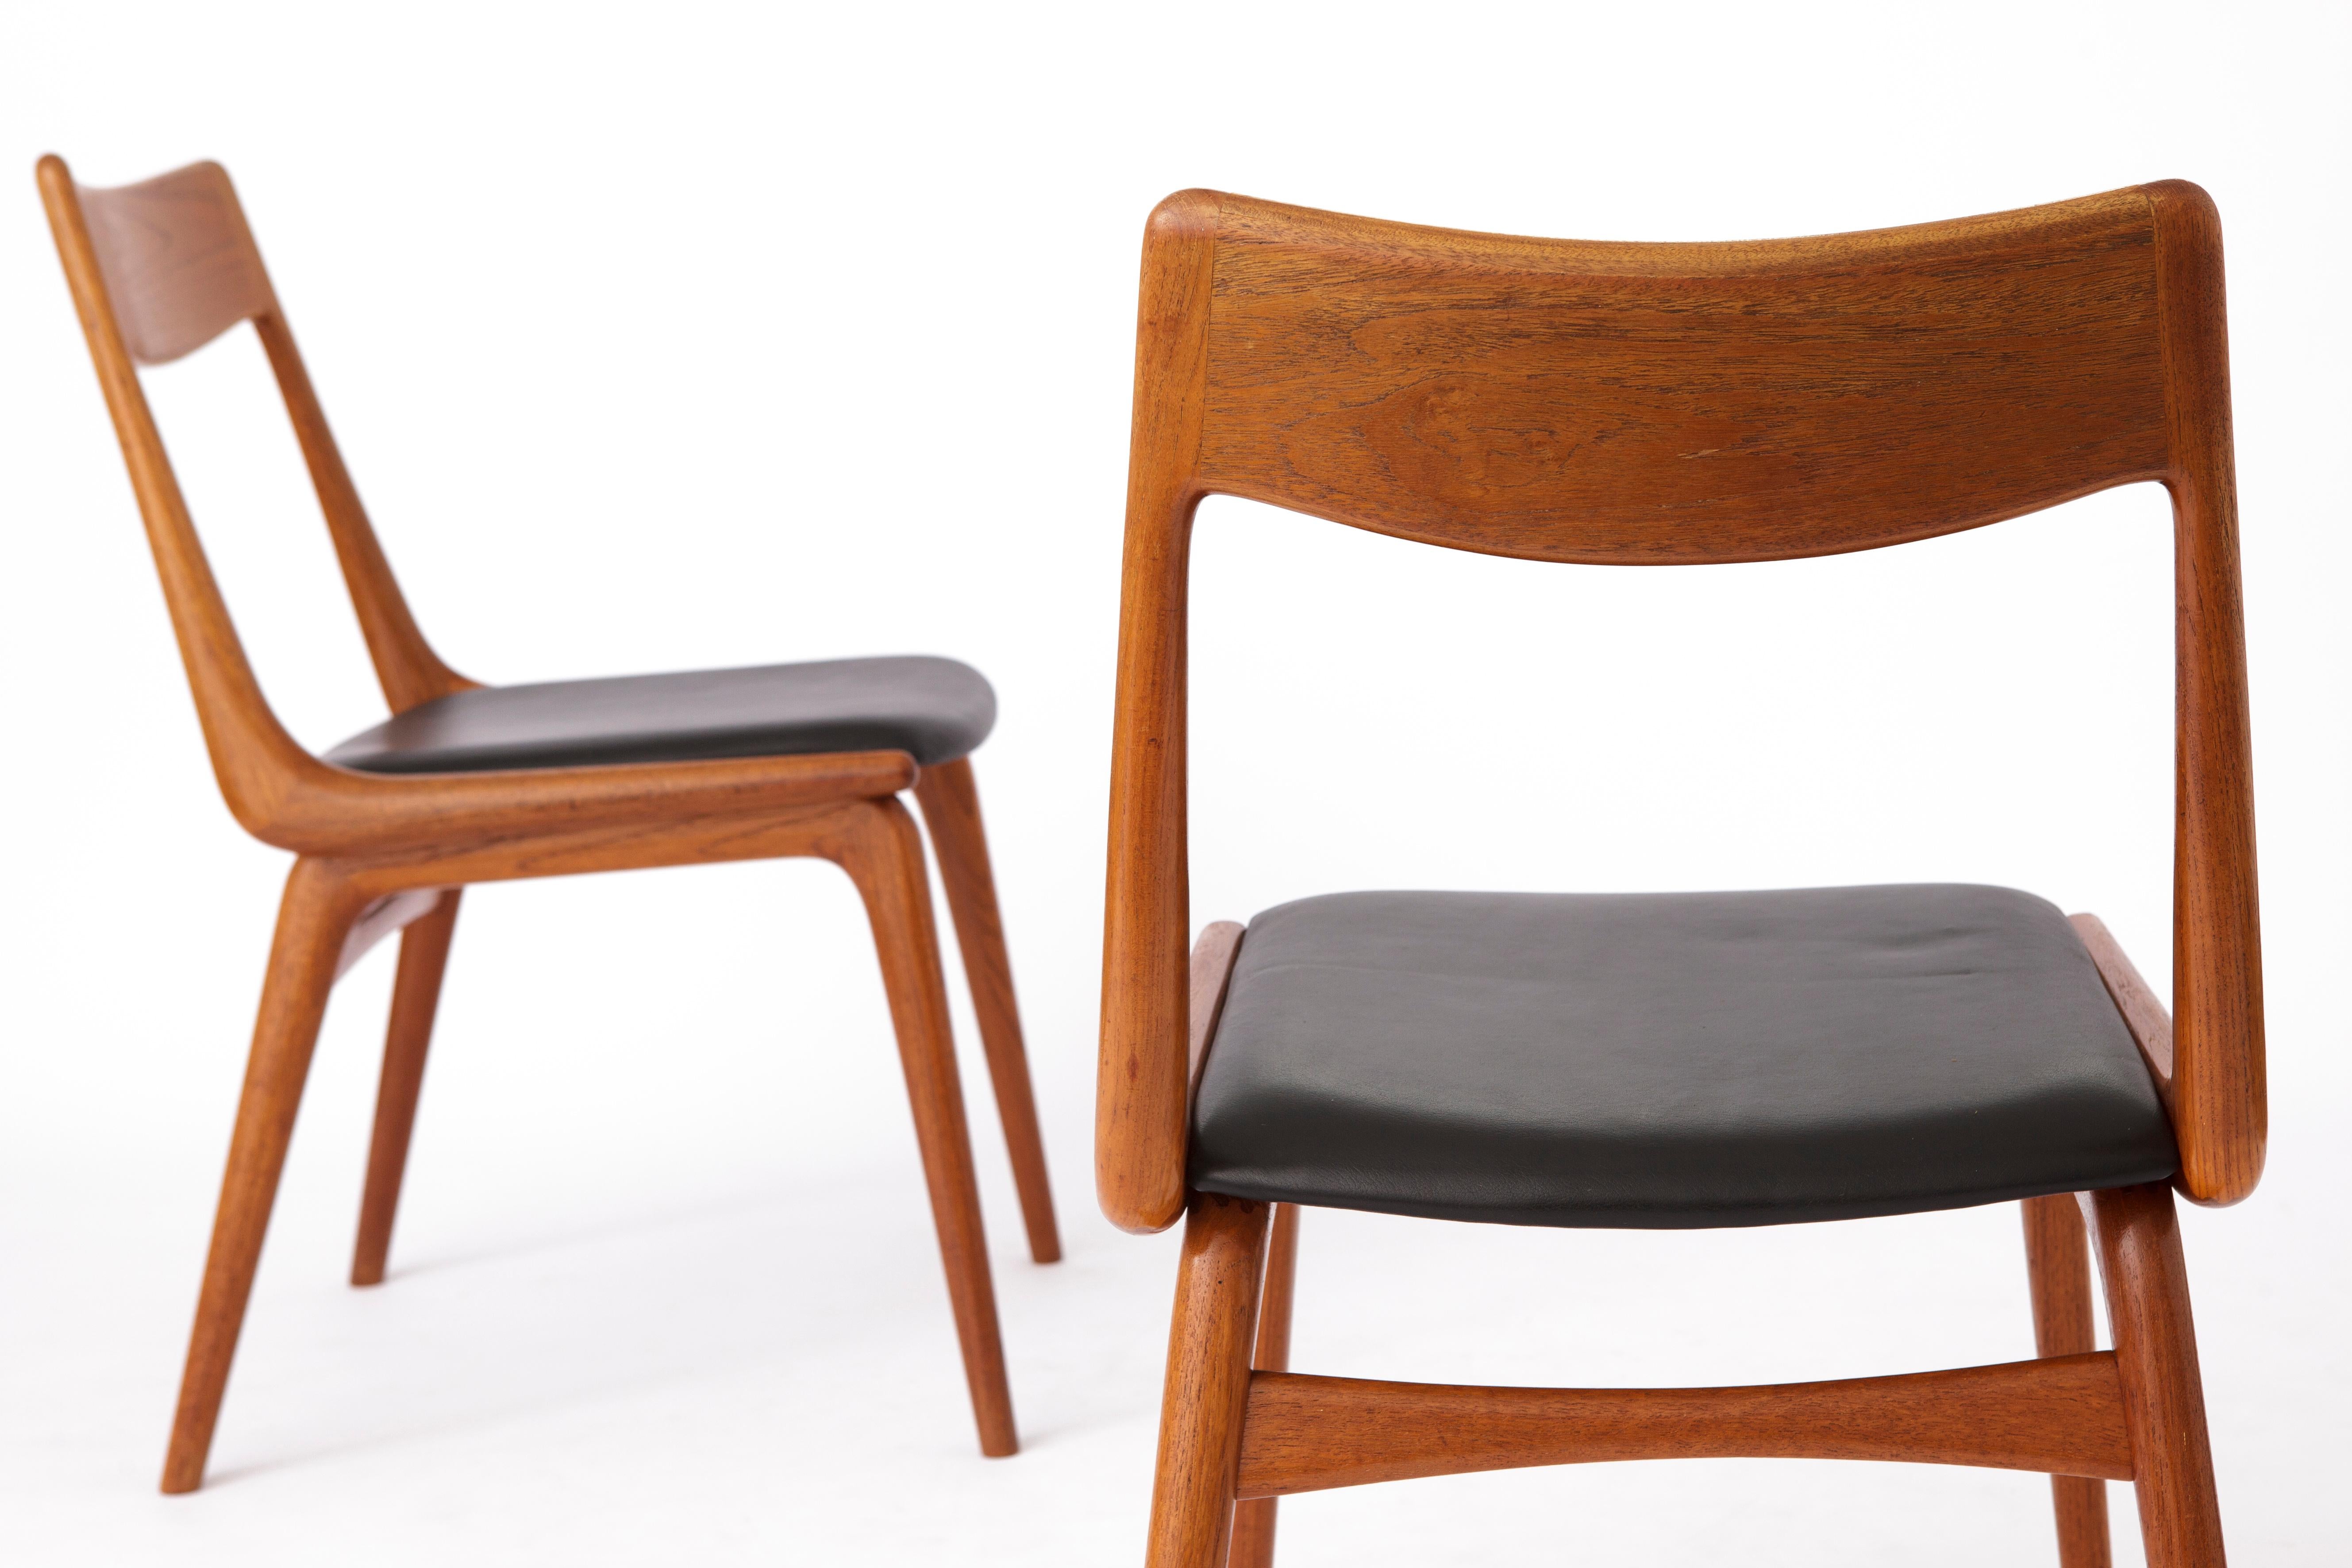 Teak Boomerang Dining Chairs by Alfred Christensen for Slagelse Møbelværk, 1950s For Sale 3